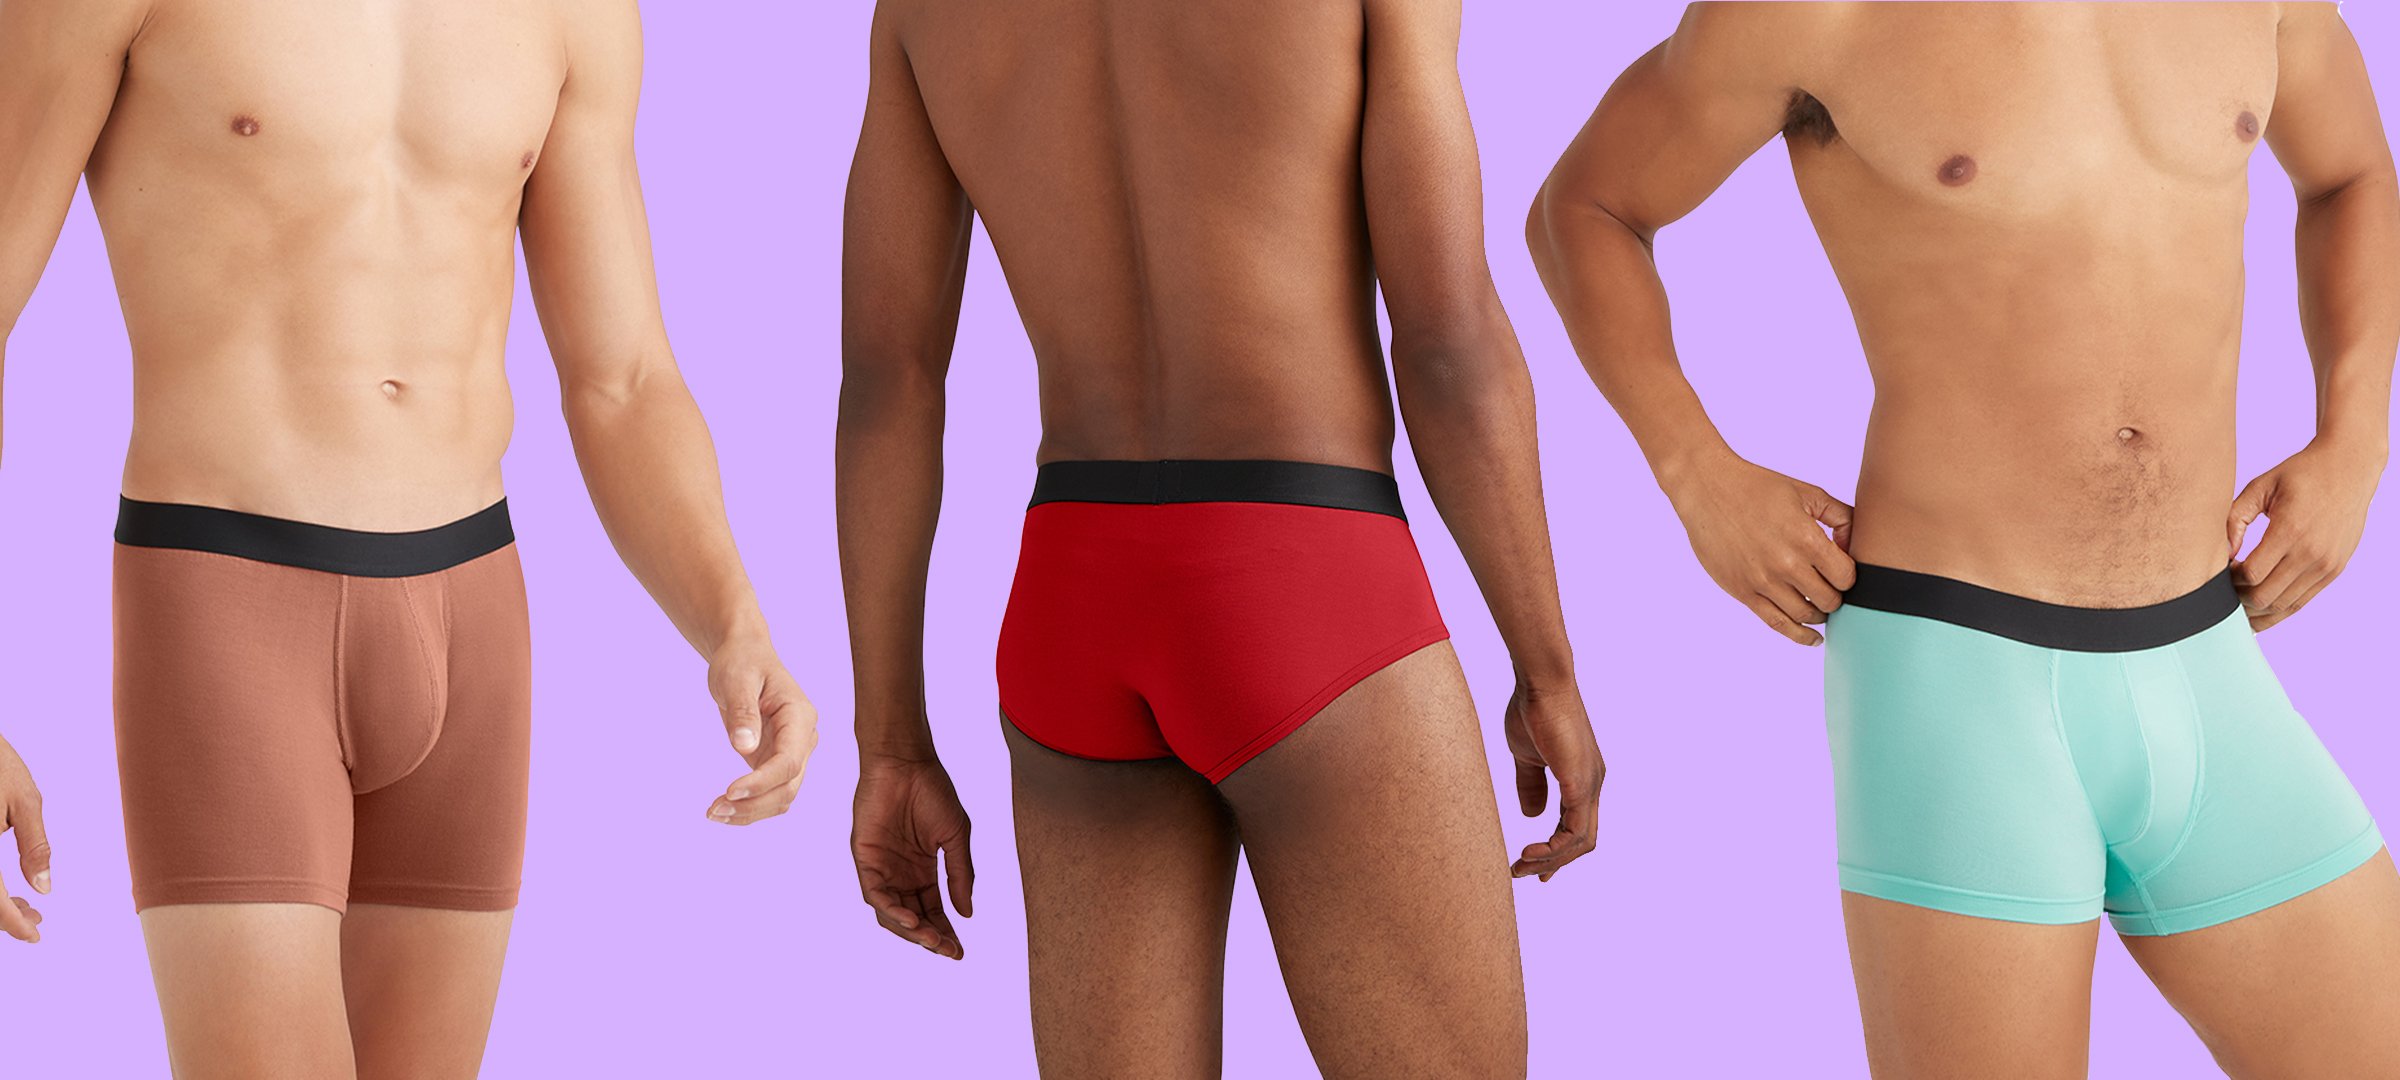 Best Men's Underwear Types — Beyond Basics by MeUndies